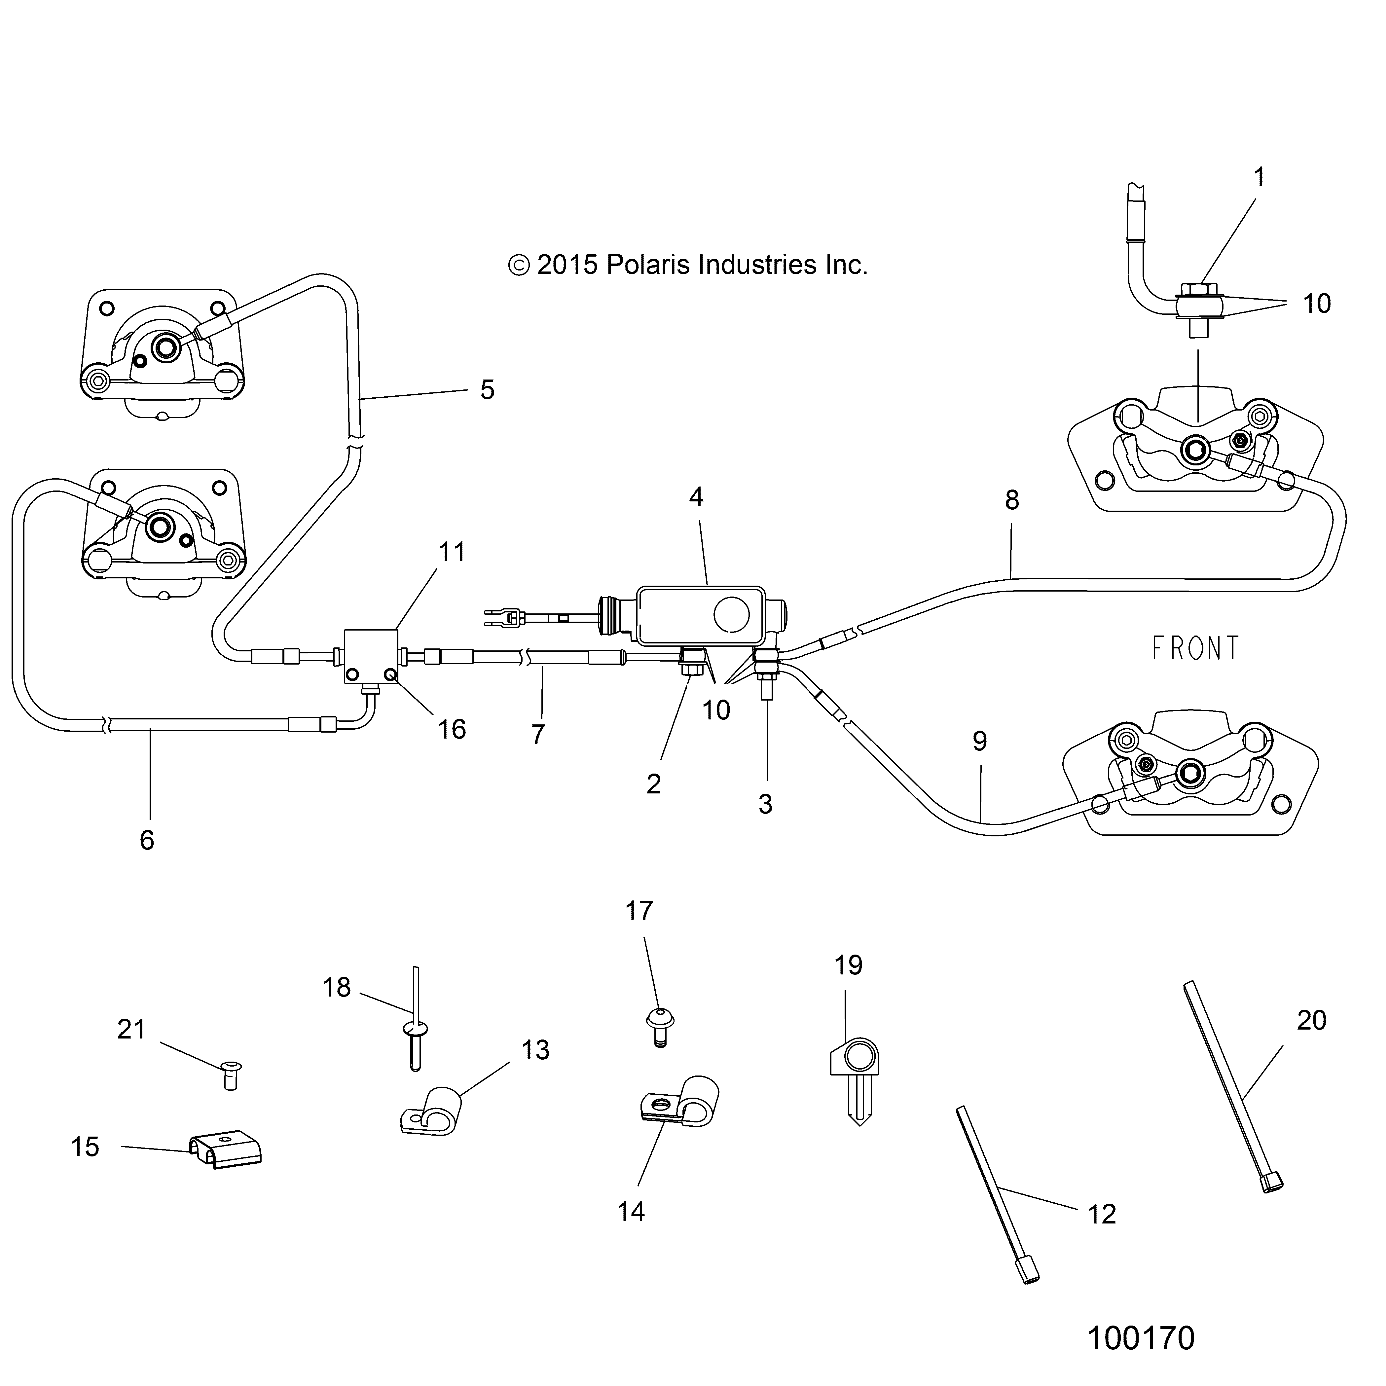 Foto diagrama Polaris que contem a peça 4012981